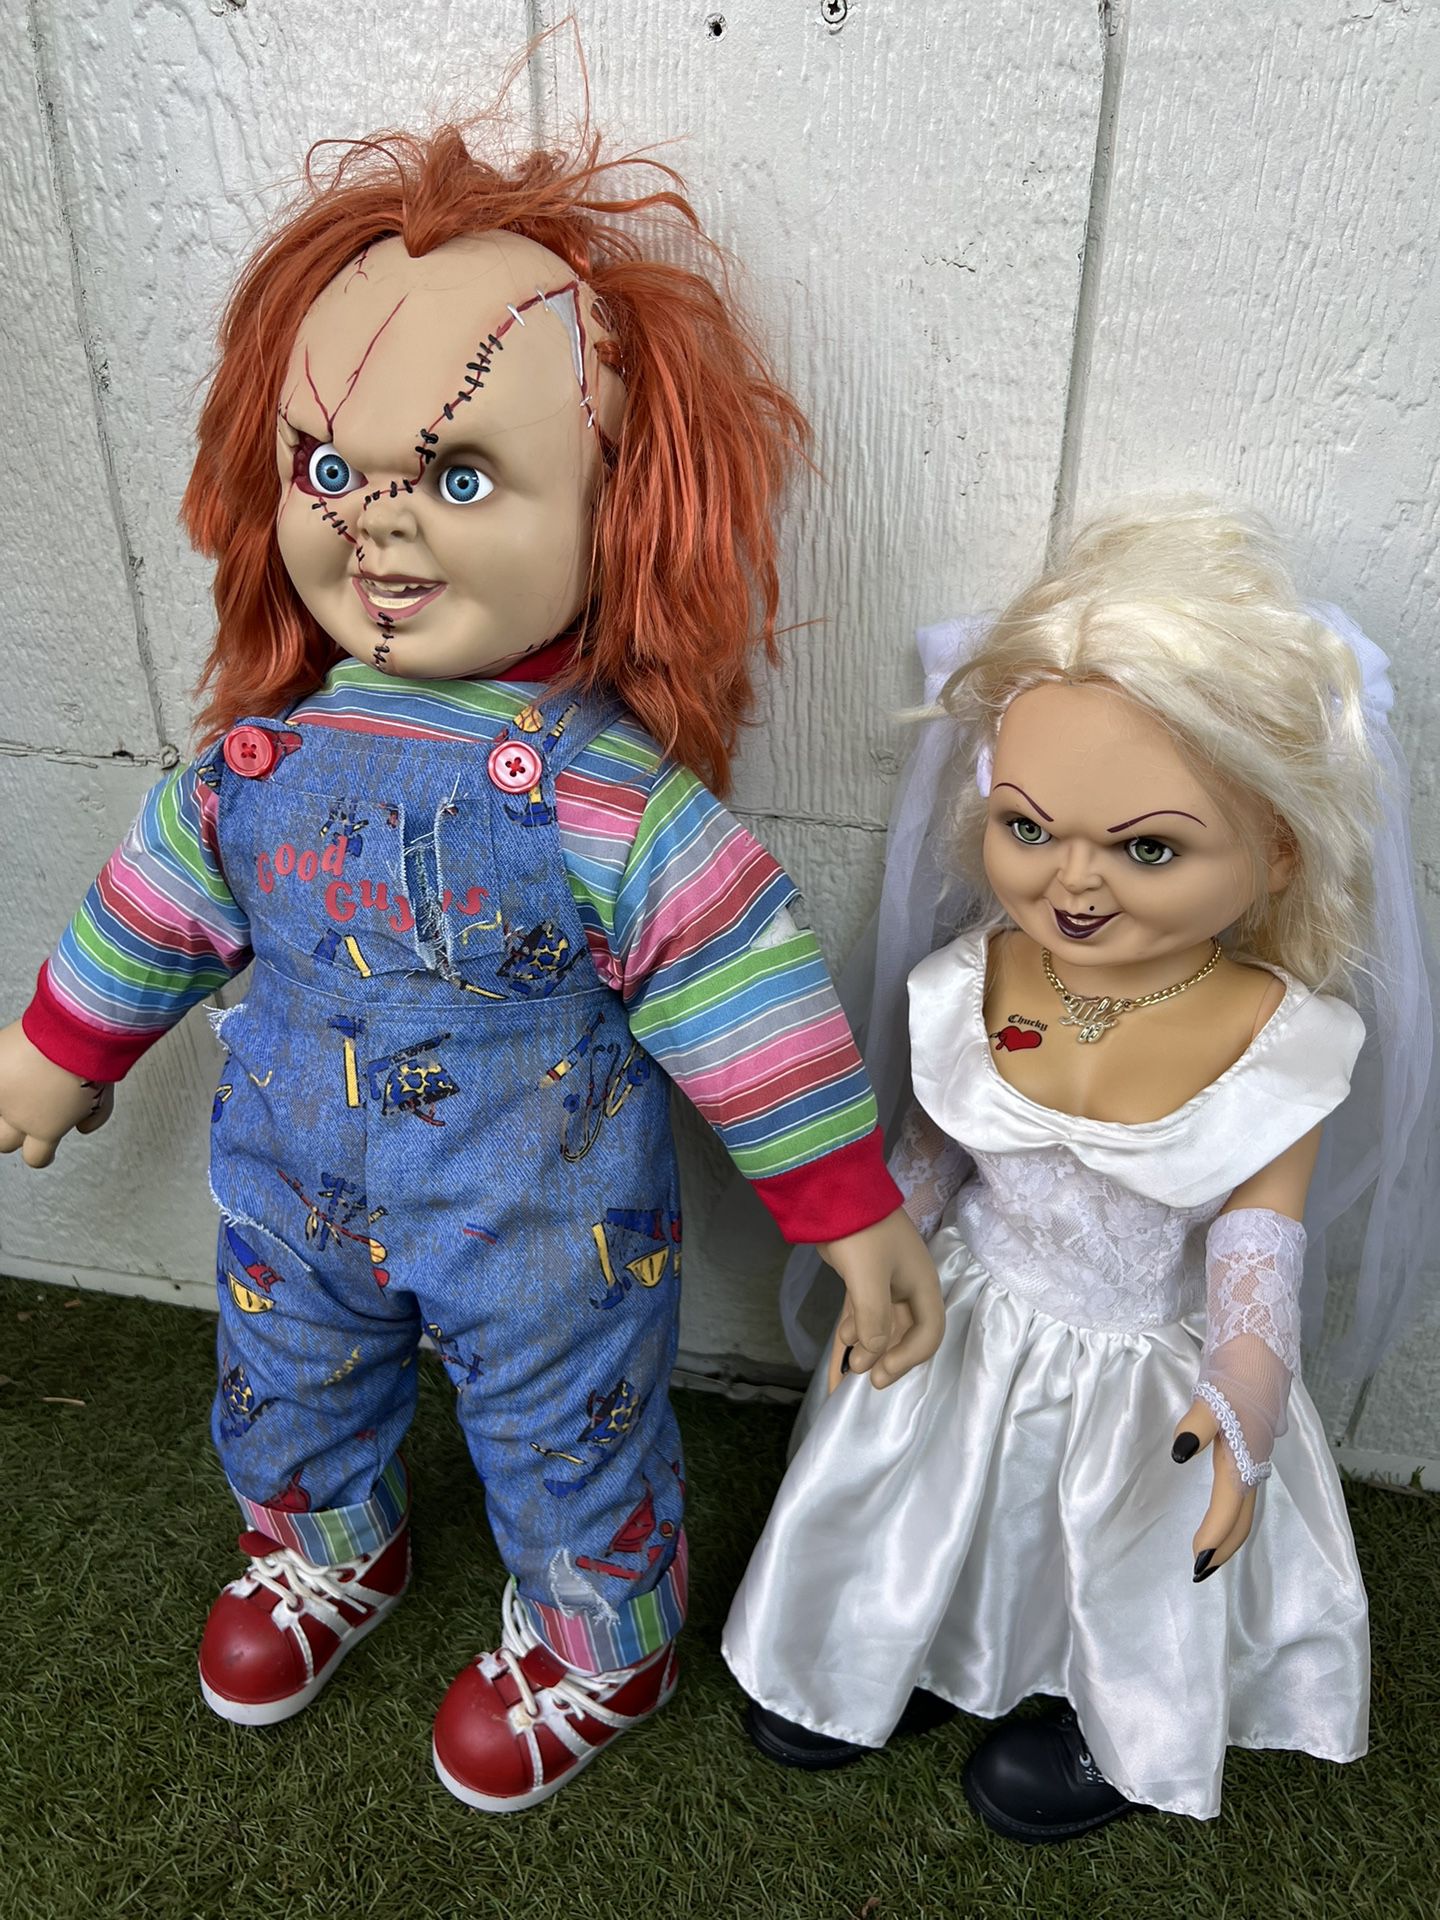 Chucky Doll And Bride Of Chucky Tiffany Doll